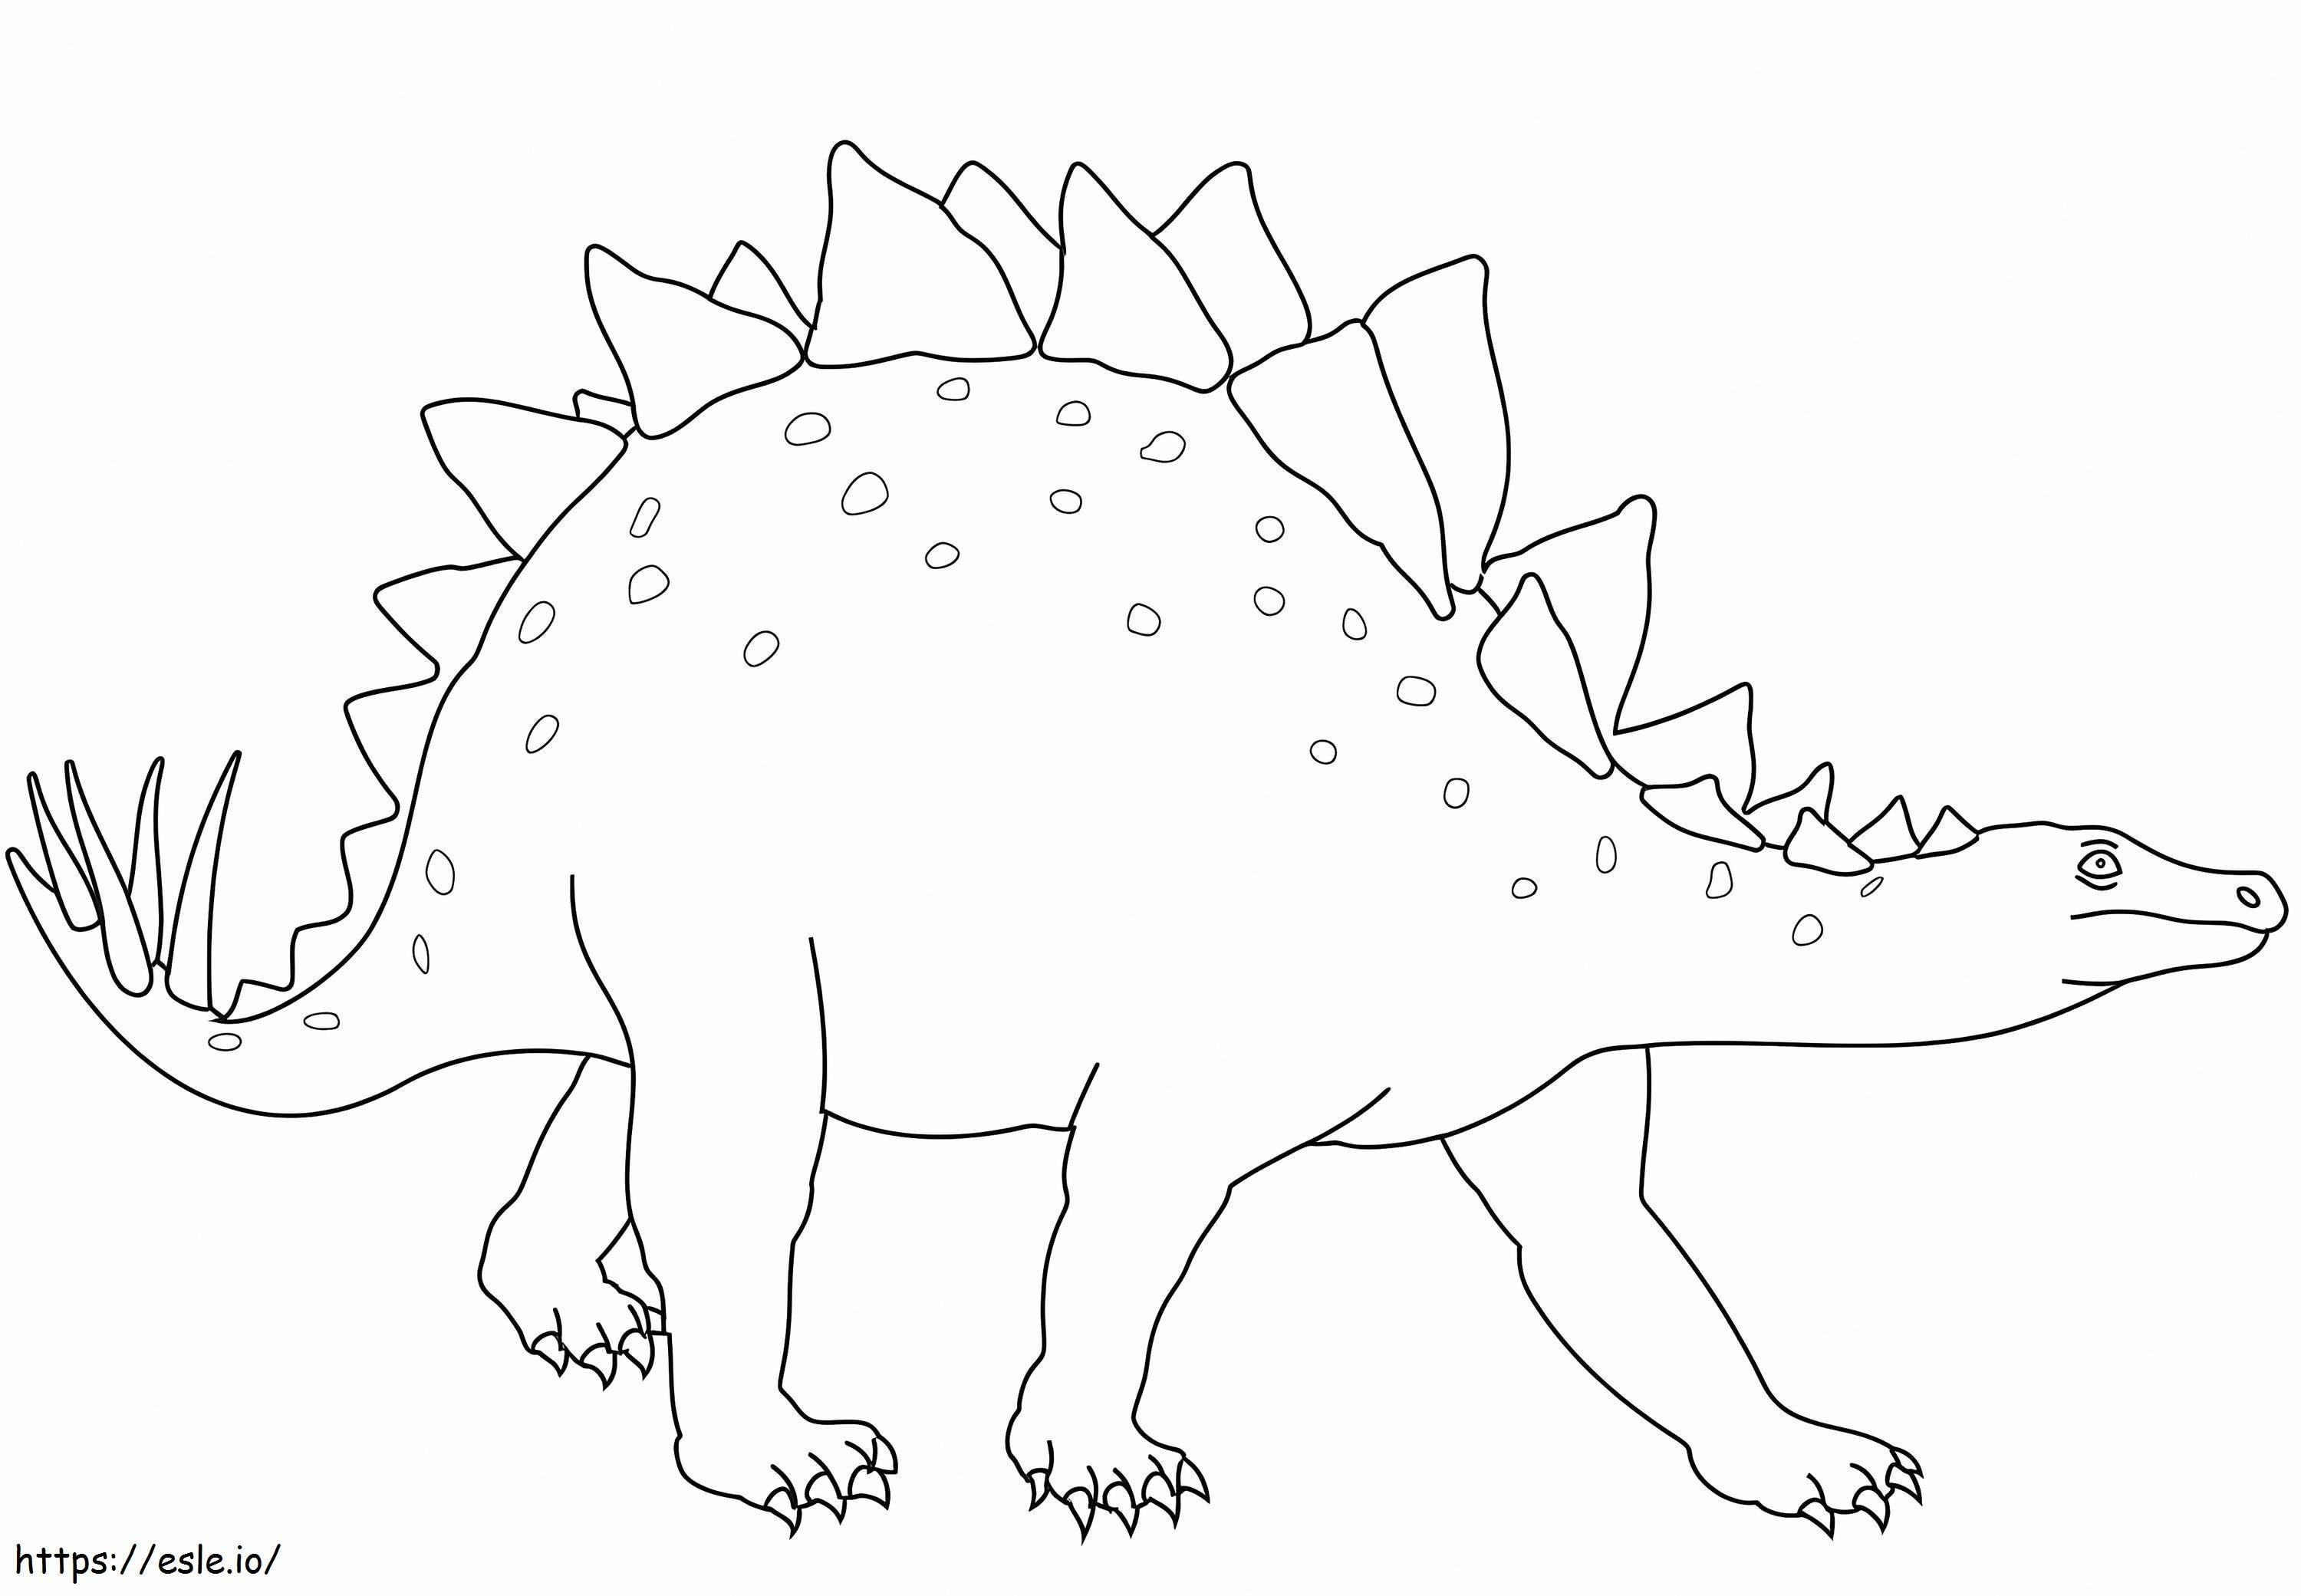 Stegosaurus Dinozor boyama